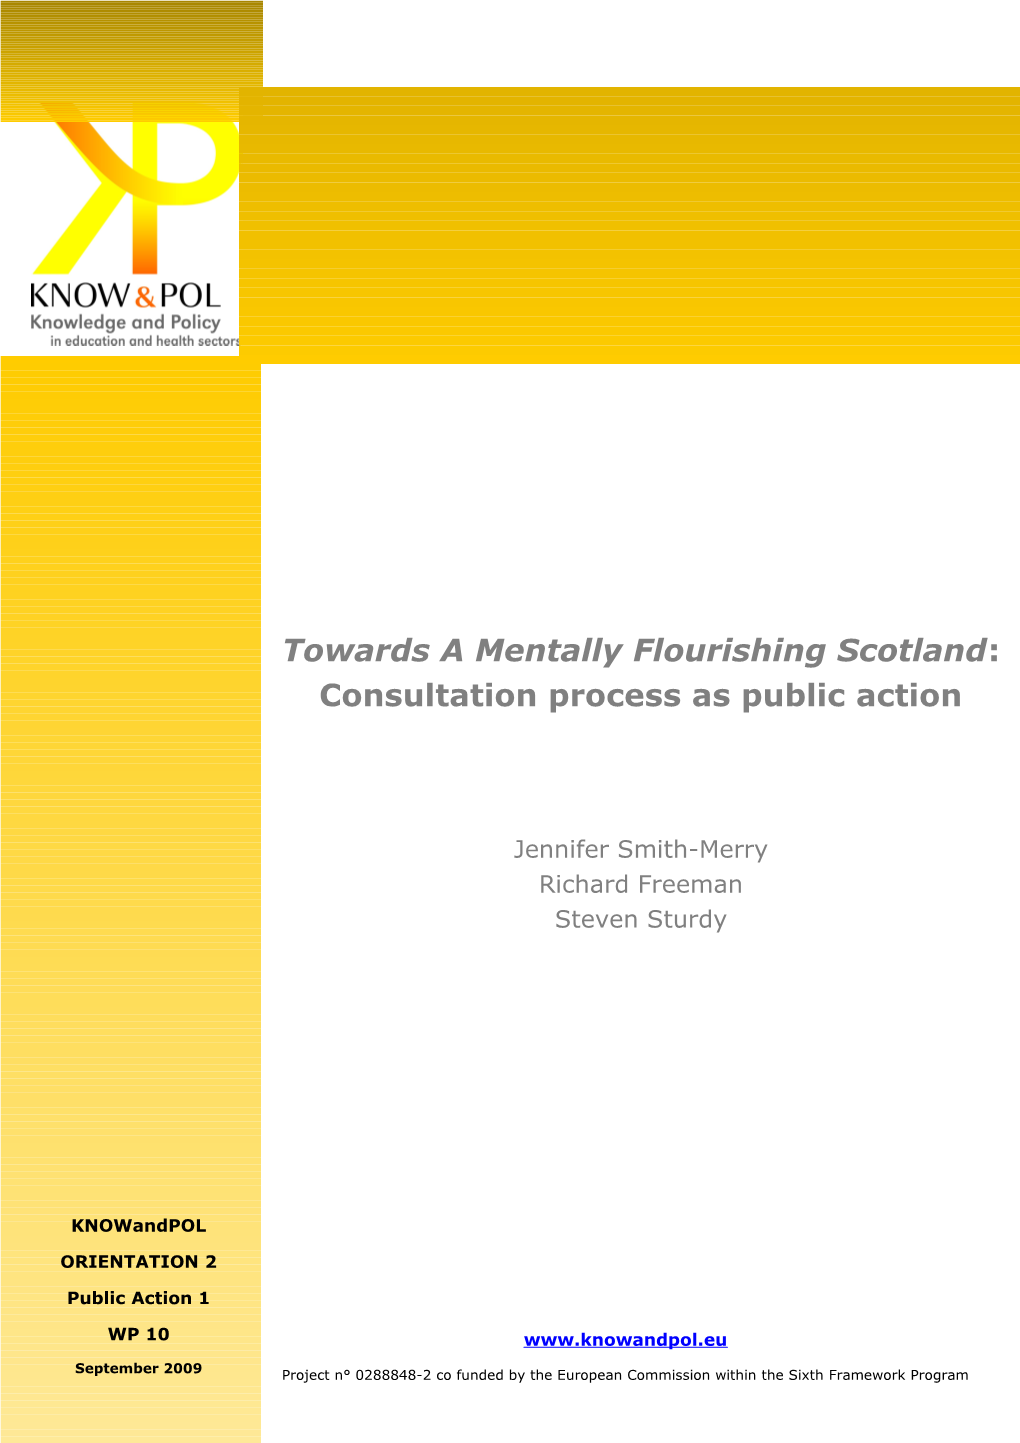 Towards a Mentally Flourishing Scotland: Consultation Process As Public Action